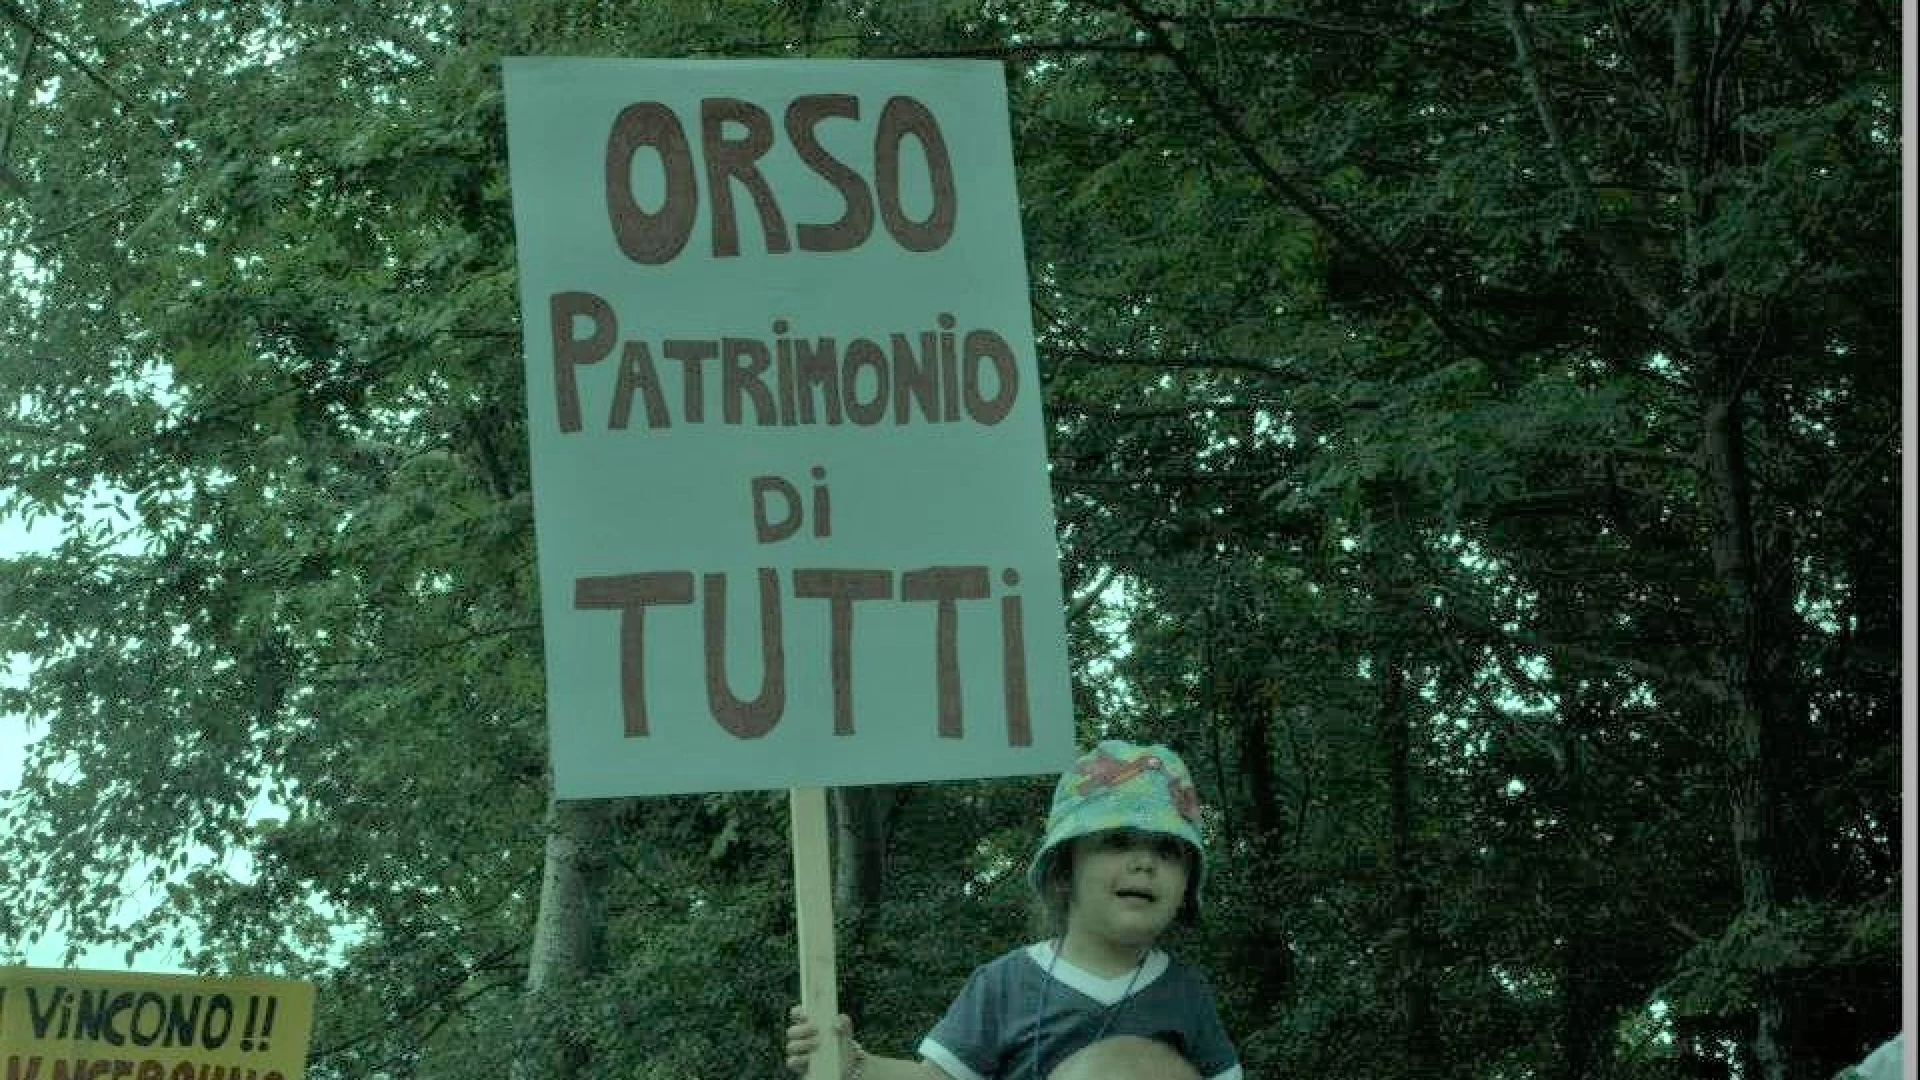 La Regione Lazio aumenta la densità venatoria nell’Area contigua del Pnalm. La protesta  continua da parte di numerose associazioni.